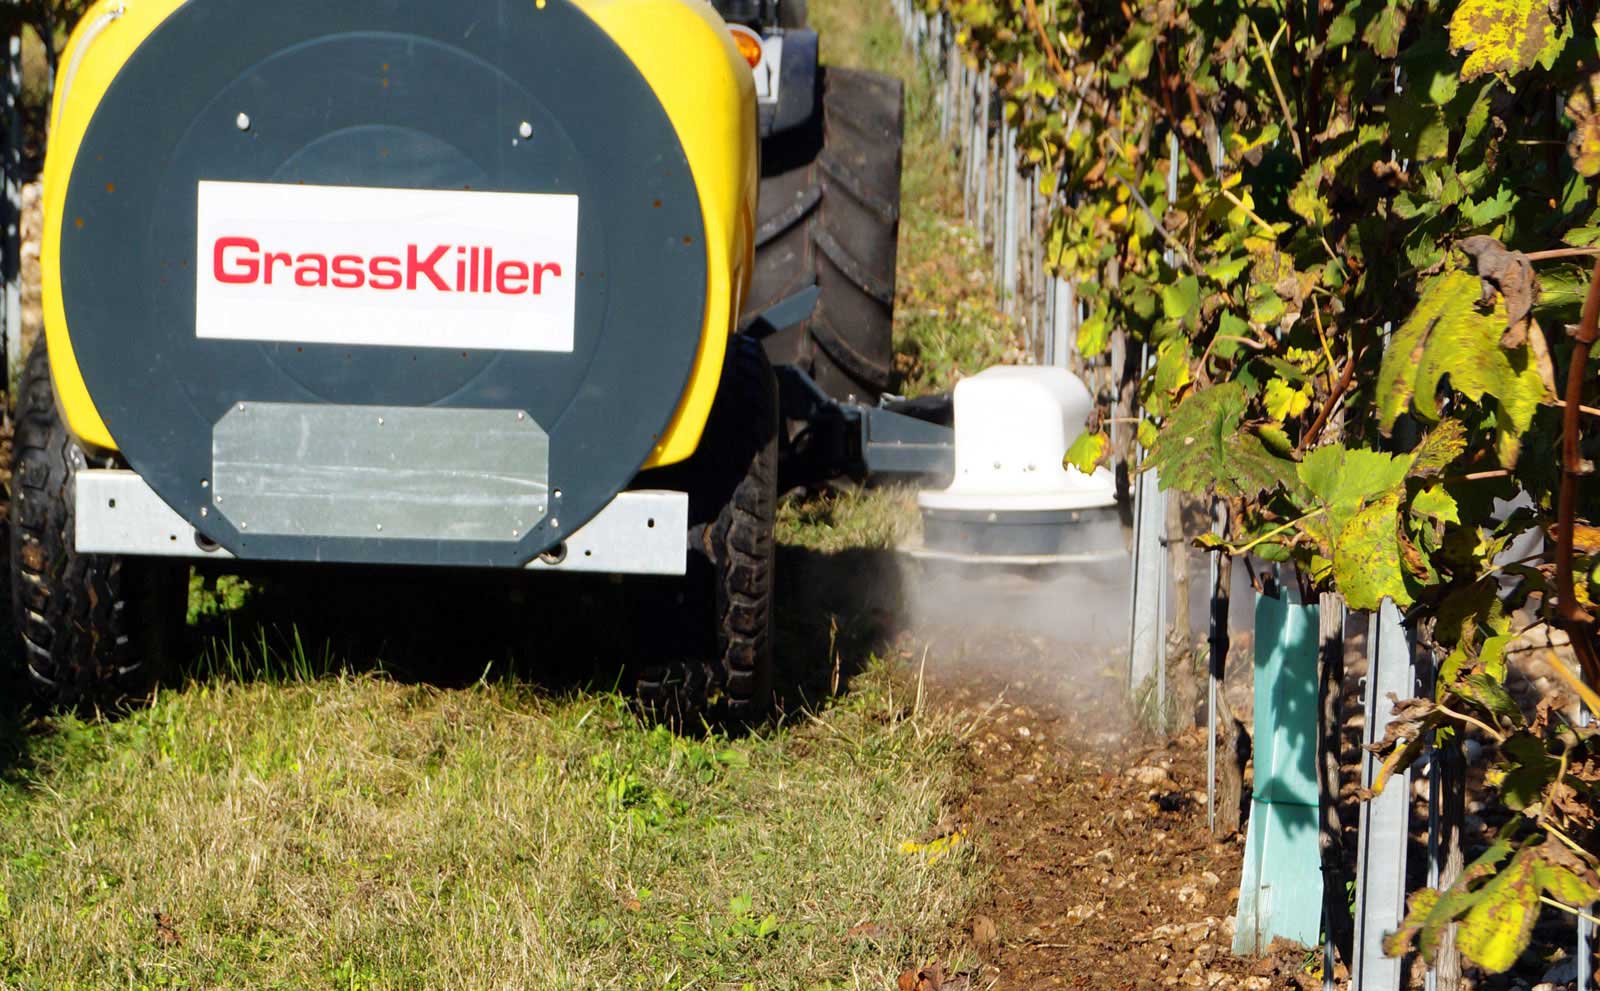 El sistema GrasKiller permite eliminar las malas hierbas solo con agua a temperatura ambiente